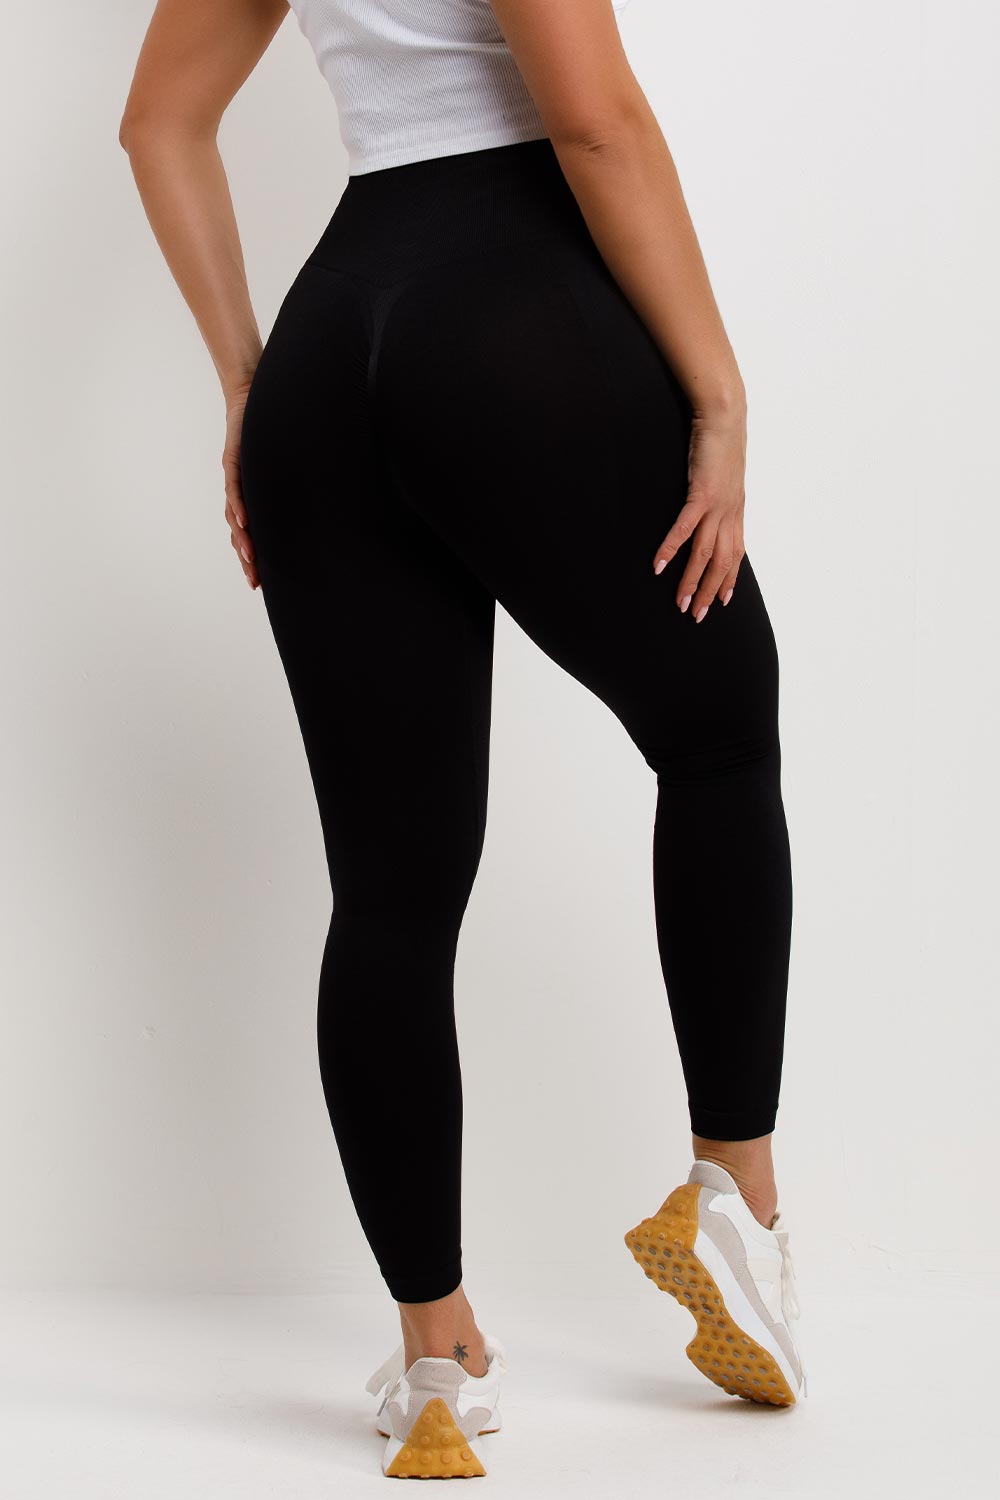 scrunch bum black contour leggings styledup fashion